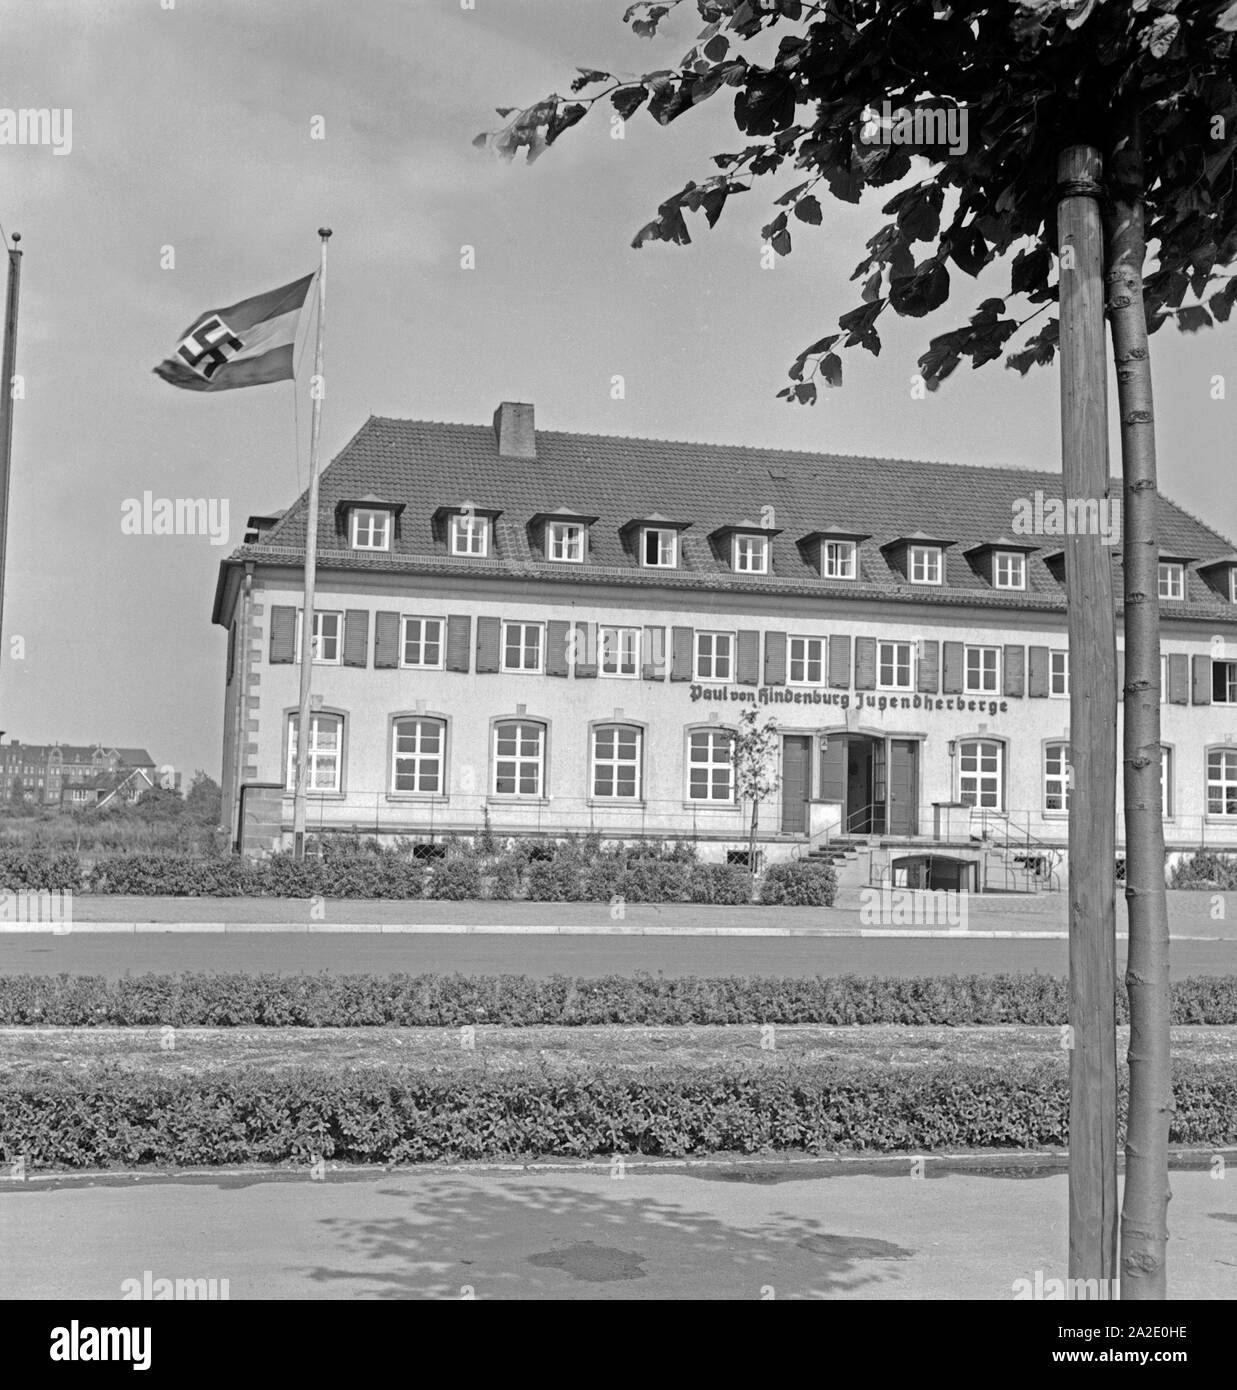 Die Paul von Hindenburg Jugendherberge in Hannover, Deutschland 1930er Jahre. The Paul von Hindenburg youth hostel at Hanover, Germany 1930s. Stock Photo